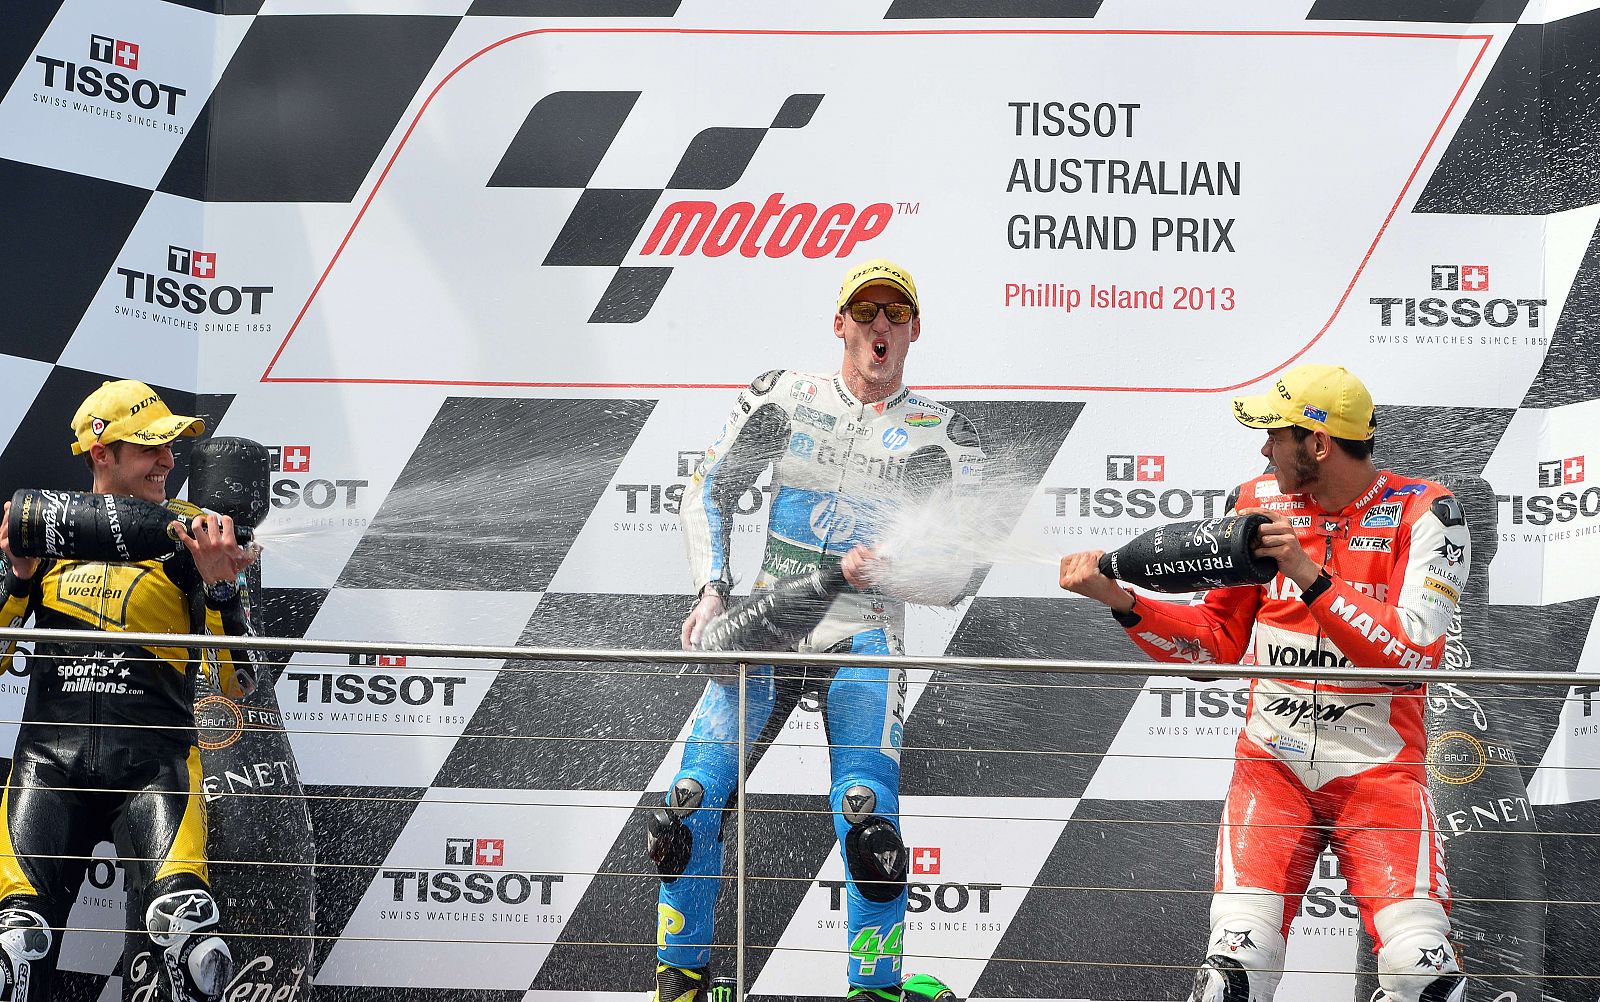 En el centro, el piloto español Pol Espargaró, del equipo Tuenti HP 40, celebra su victoria en la catergoría Moto2 en el Gran Premio de Australia